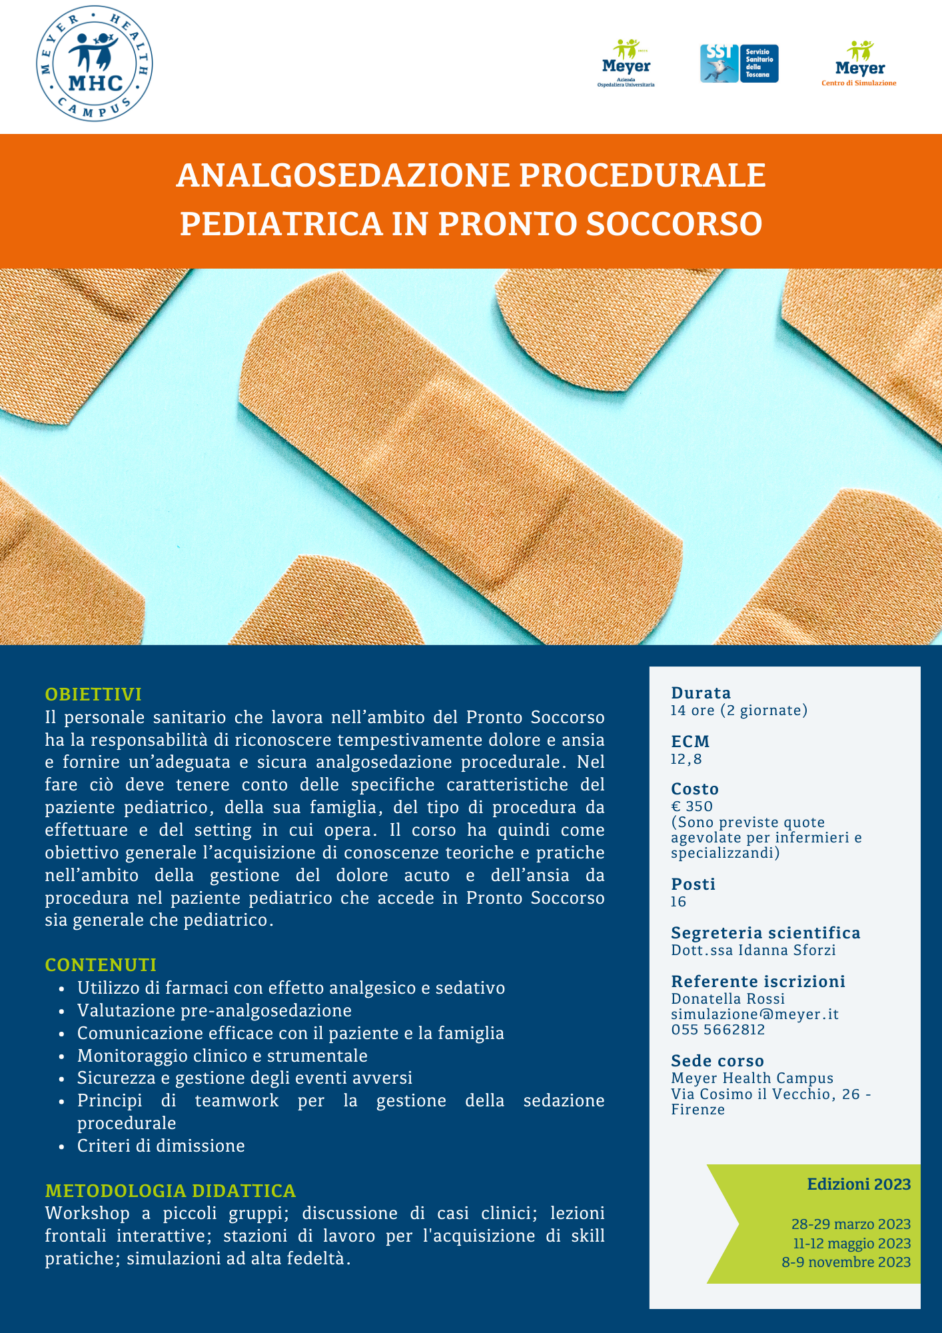 Analgosedazione procedurale pediatrica in Pronto Soccorso (8-9 novembre 2023)